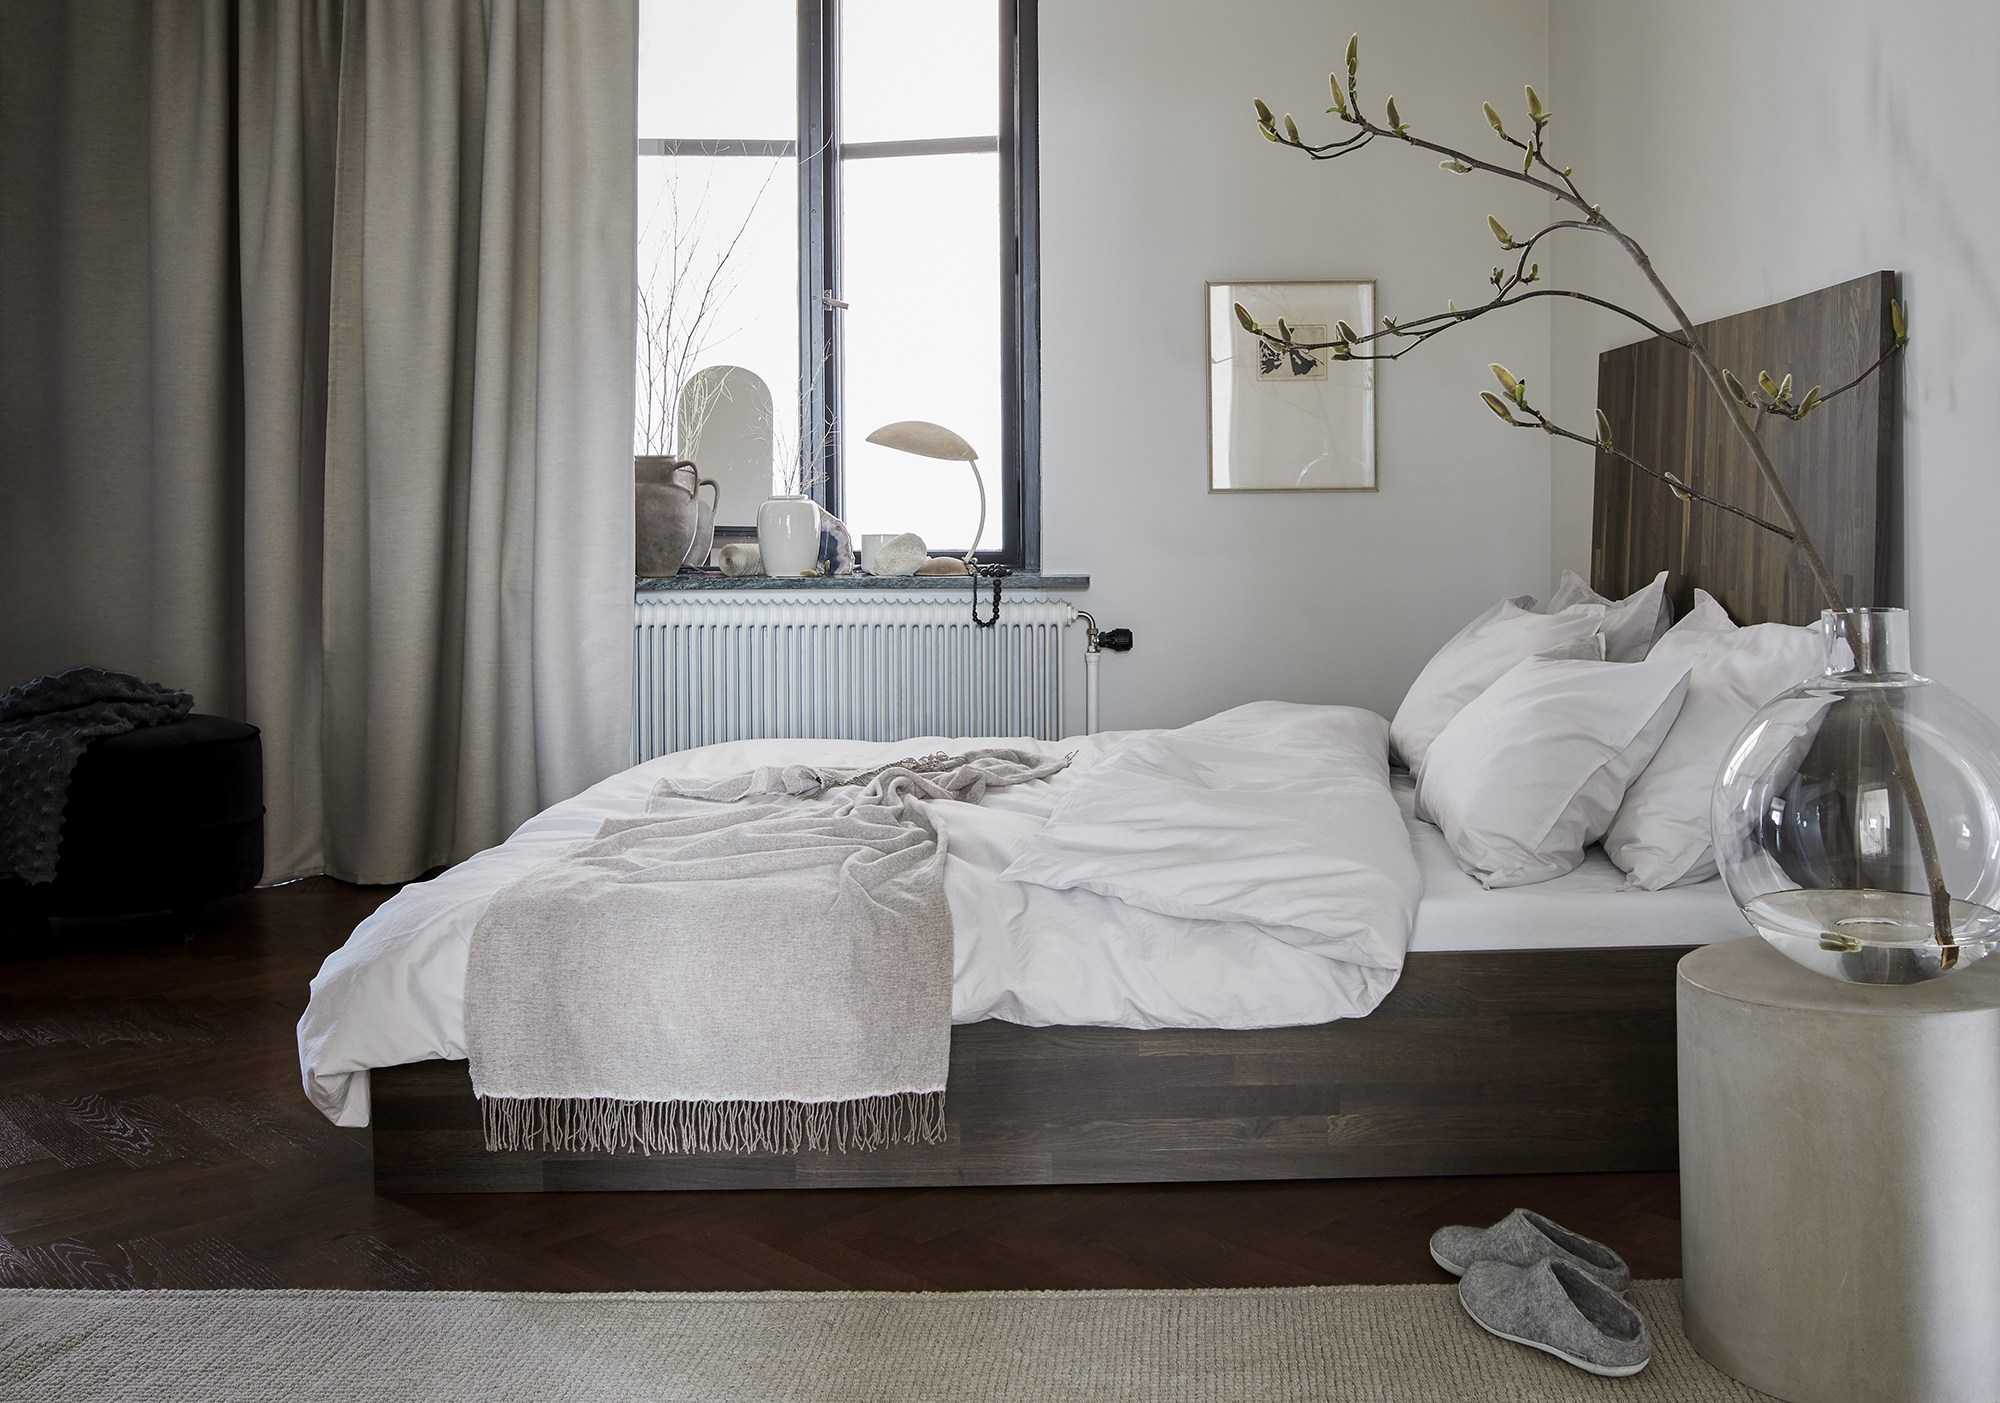 Спальня в современном стиле (163 фото): идеи дизайна 2021, как оформить интерьер маленькой комнаты 12-15 кв. м, красивый ремонт в серых тонах